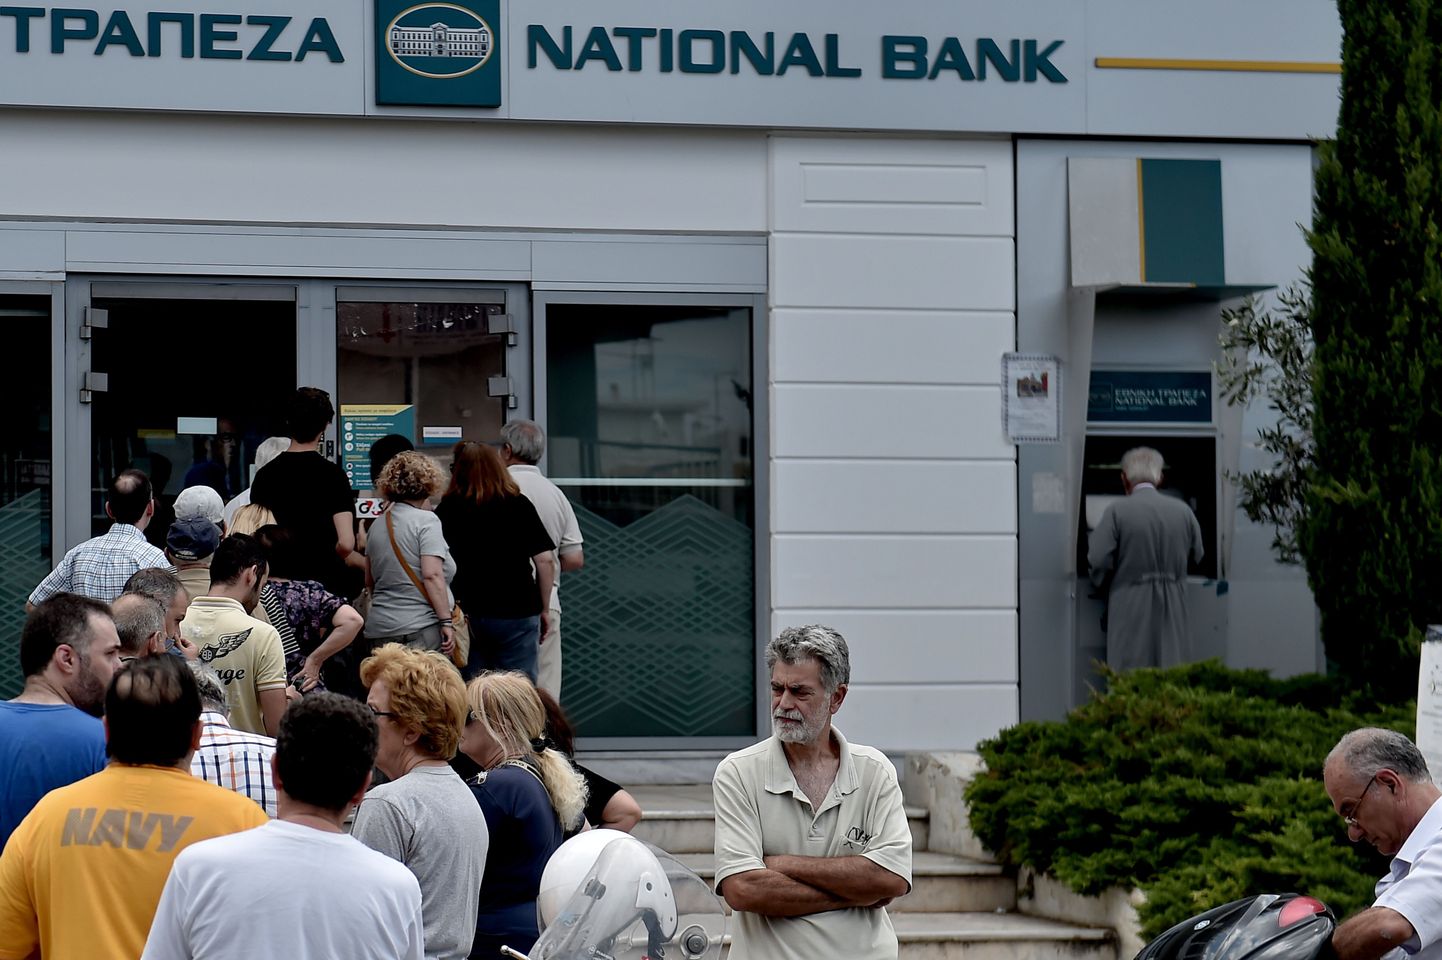 Kreeka. Järjekorrad pangaautomaatide taga